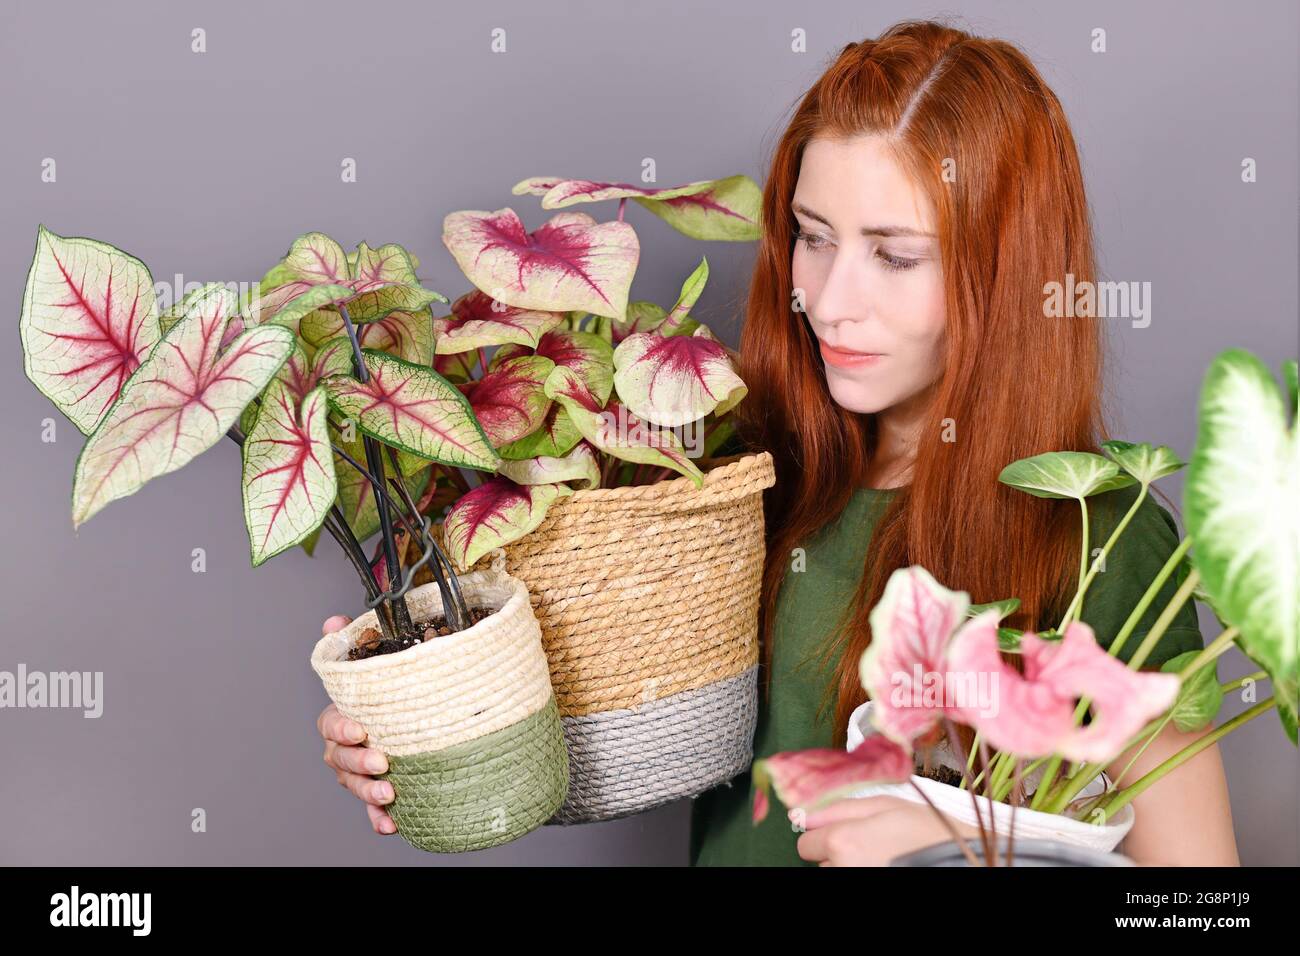 Frau mit rotem Haar, die viele tropische Caladium-Zimmerpflanzen in Blumentöpfen hält Stockfoto